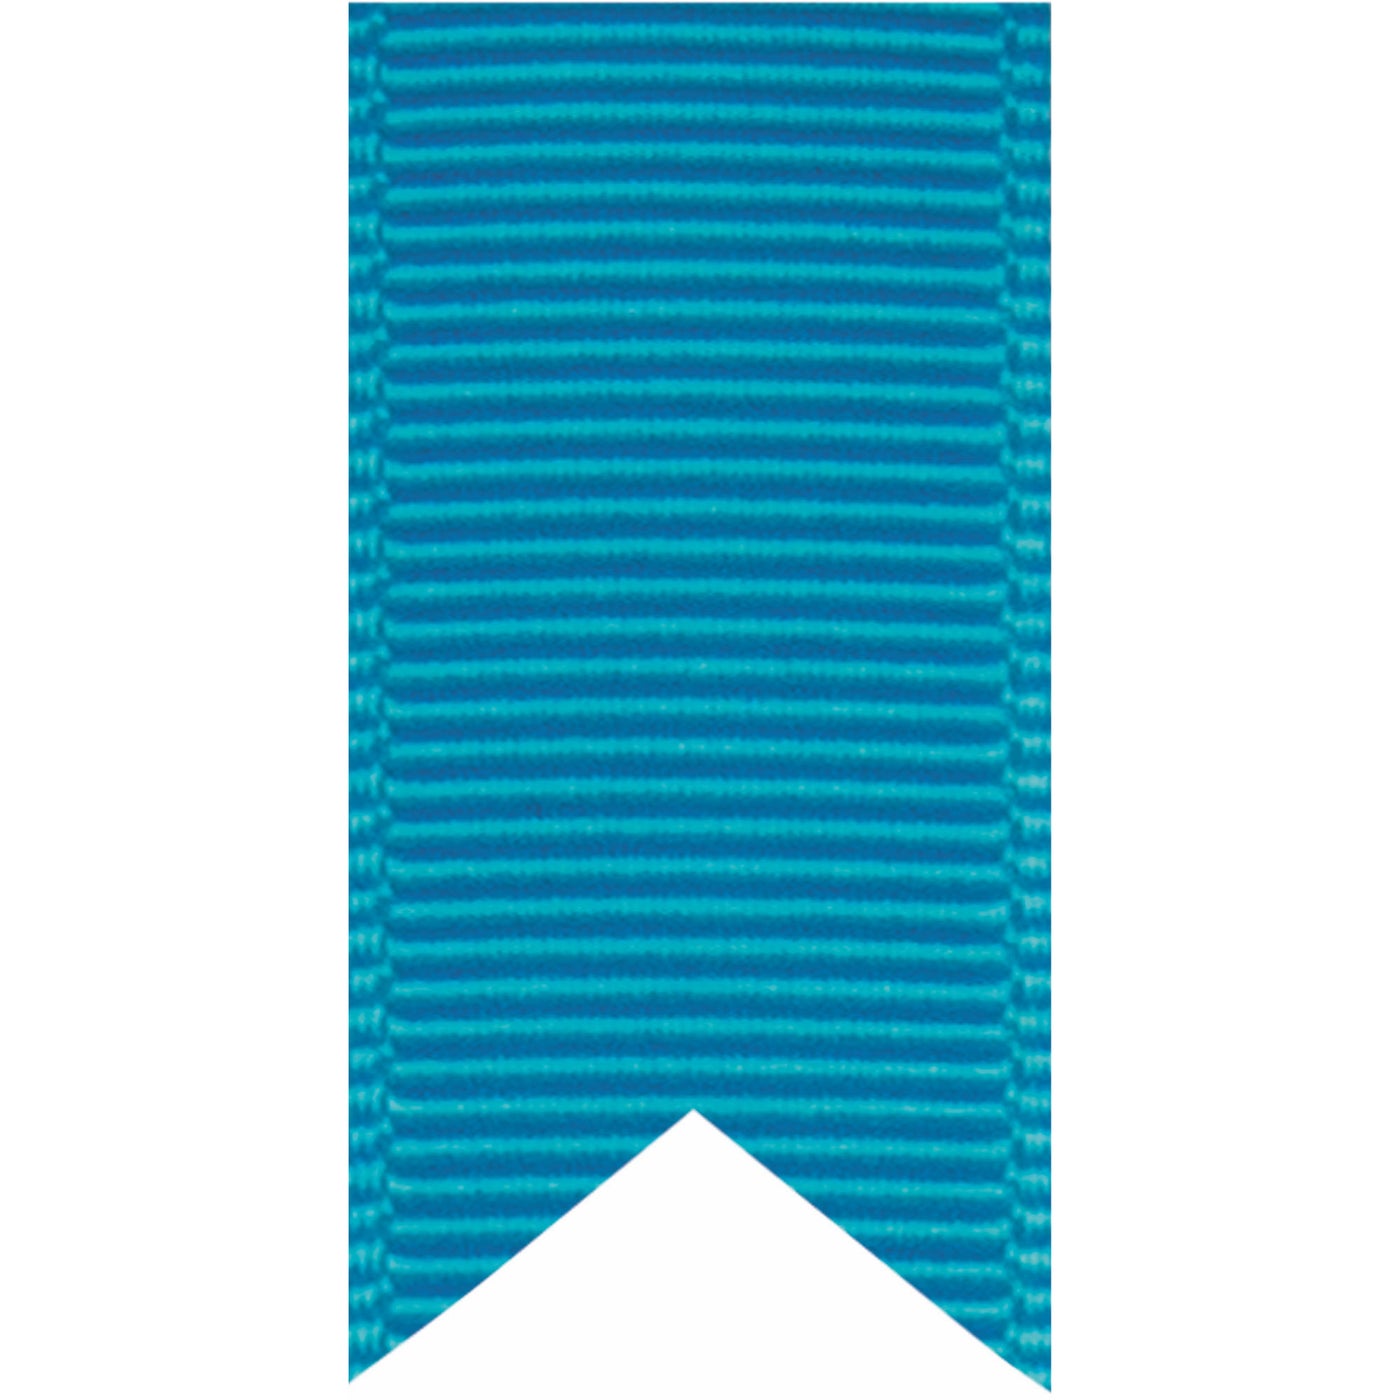 5/8" Aqua Grosgrain Ribbon